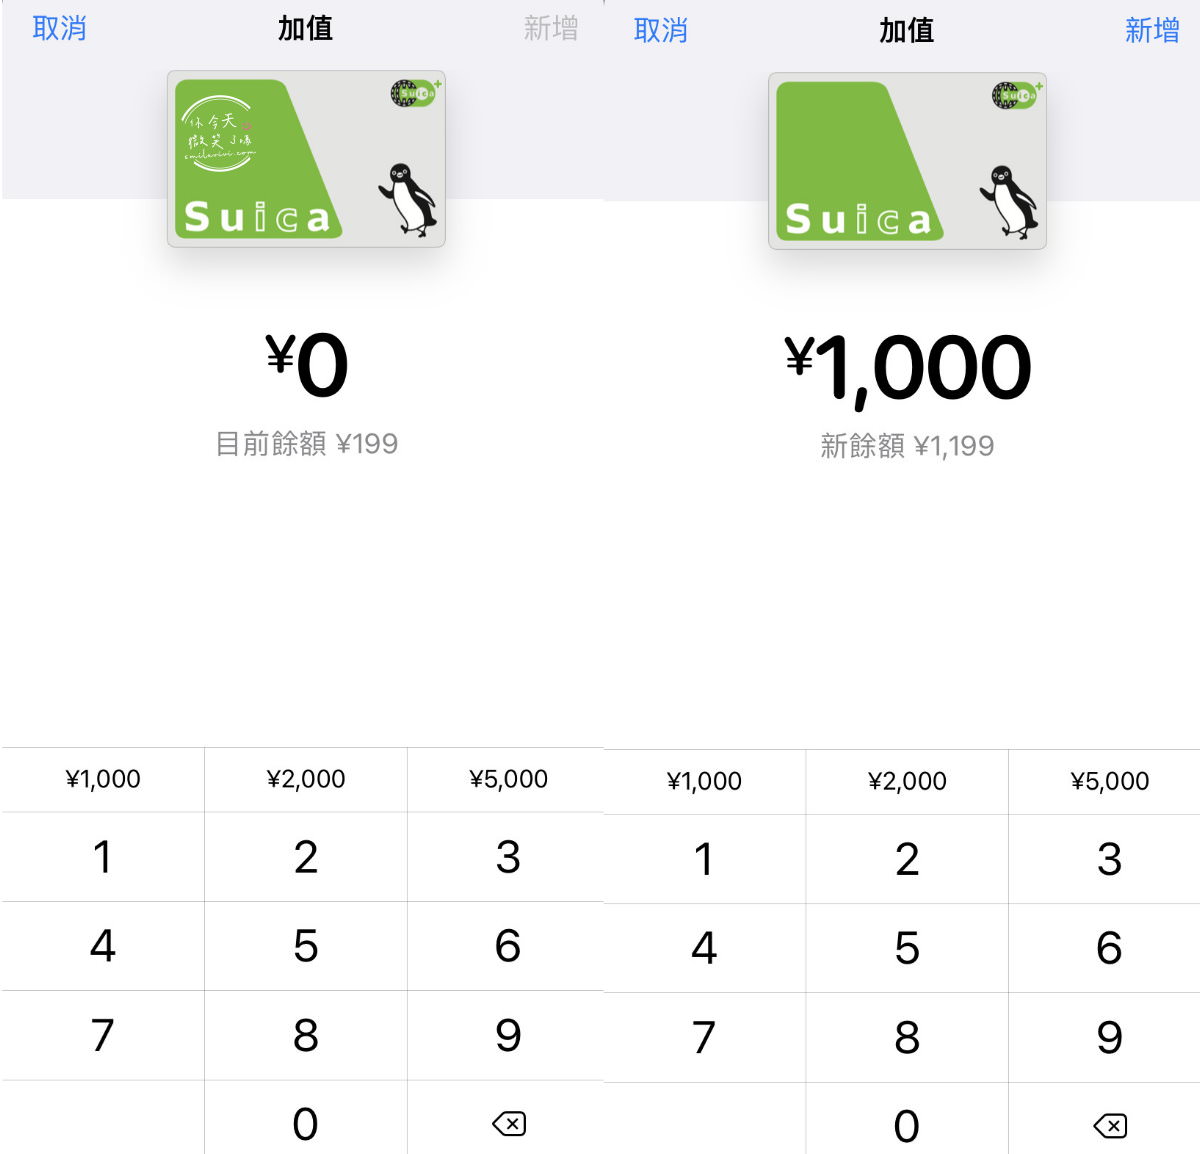 日本旅遊∥日本Suica綁iPhone錢包搭地鐵︱搭乘地鐵刷iPhone錢包︱手機儲值西瓜卡、交通IC卡︱手機刷卡搭地鐵︱日本交通卡Suica、PASMO、ICOCA卡 19 suica 20